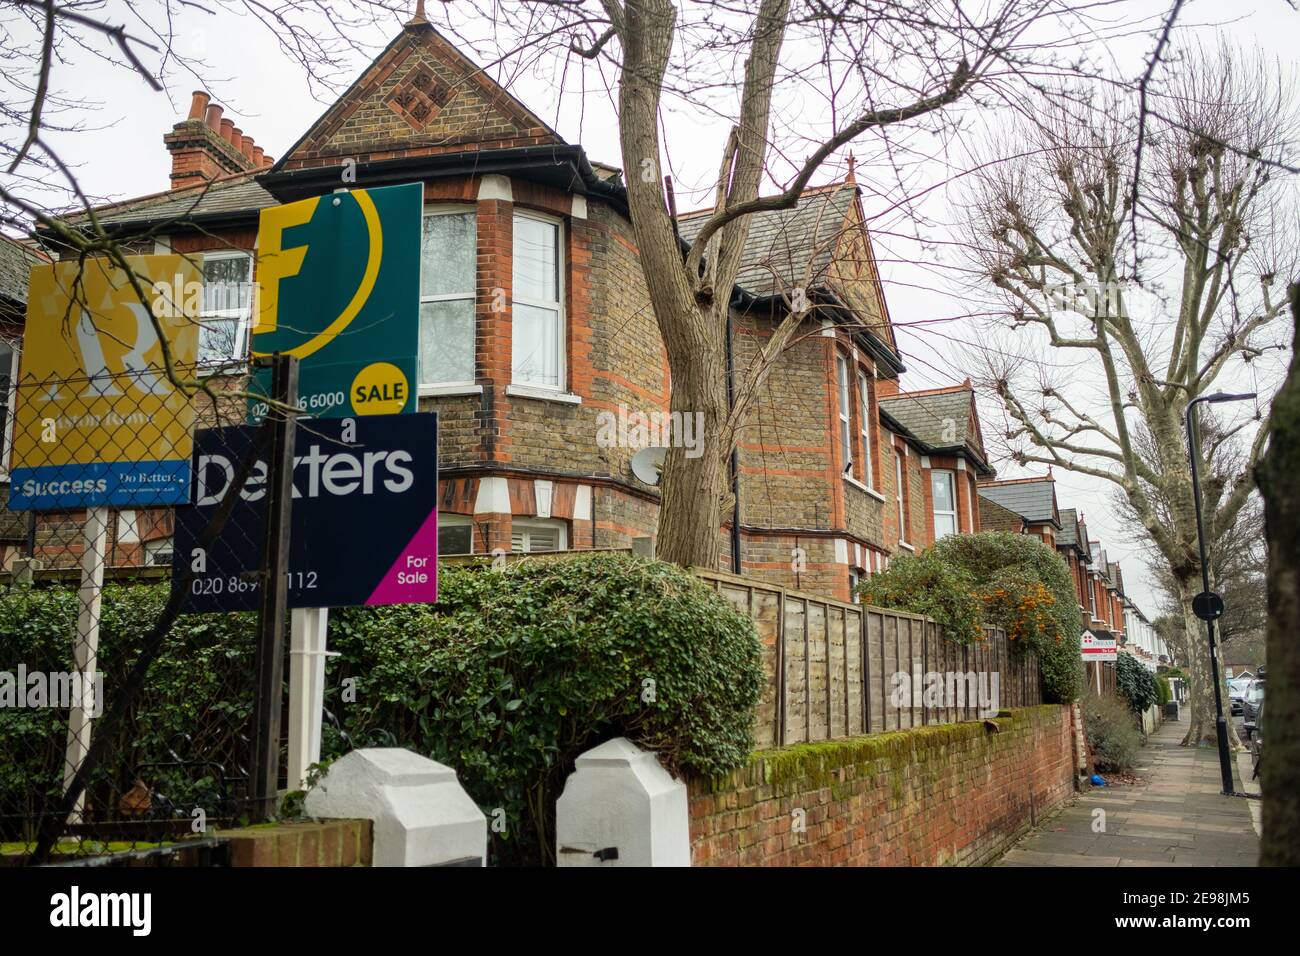 Acton, Londra: Cartelli per l'agente immobiliare su una strada di case ad Acton, a ovest di Londra Foto Stock